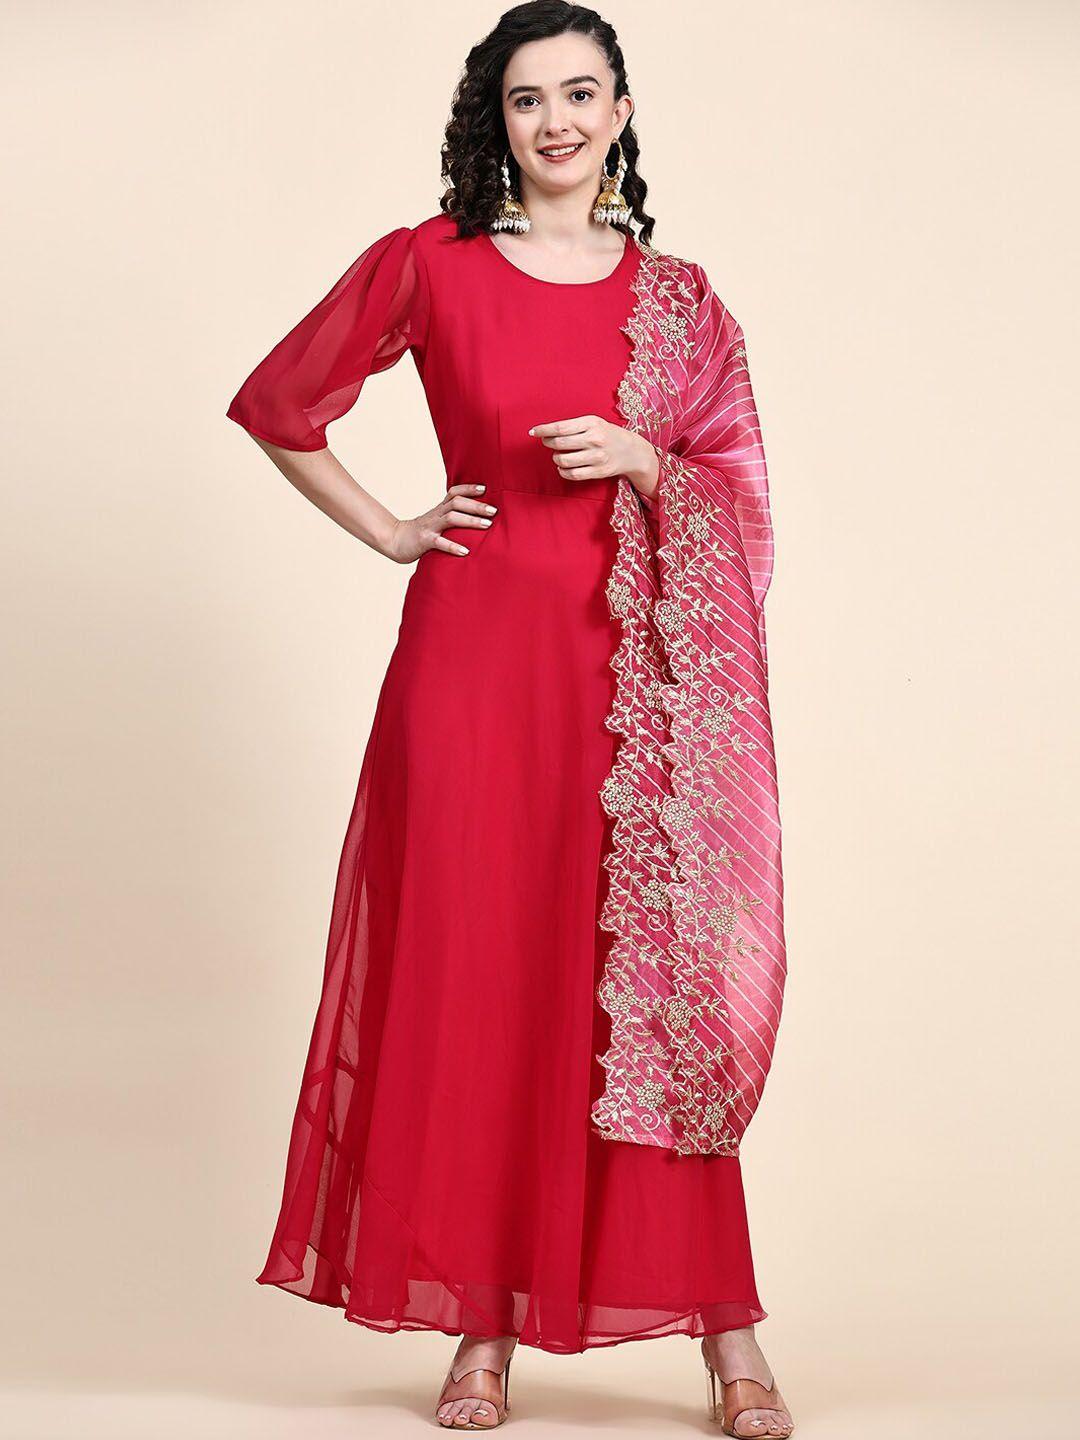 kalini flared ethnic dresses with embellished dupatta